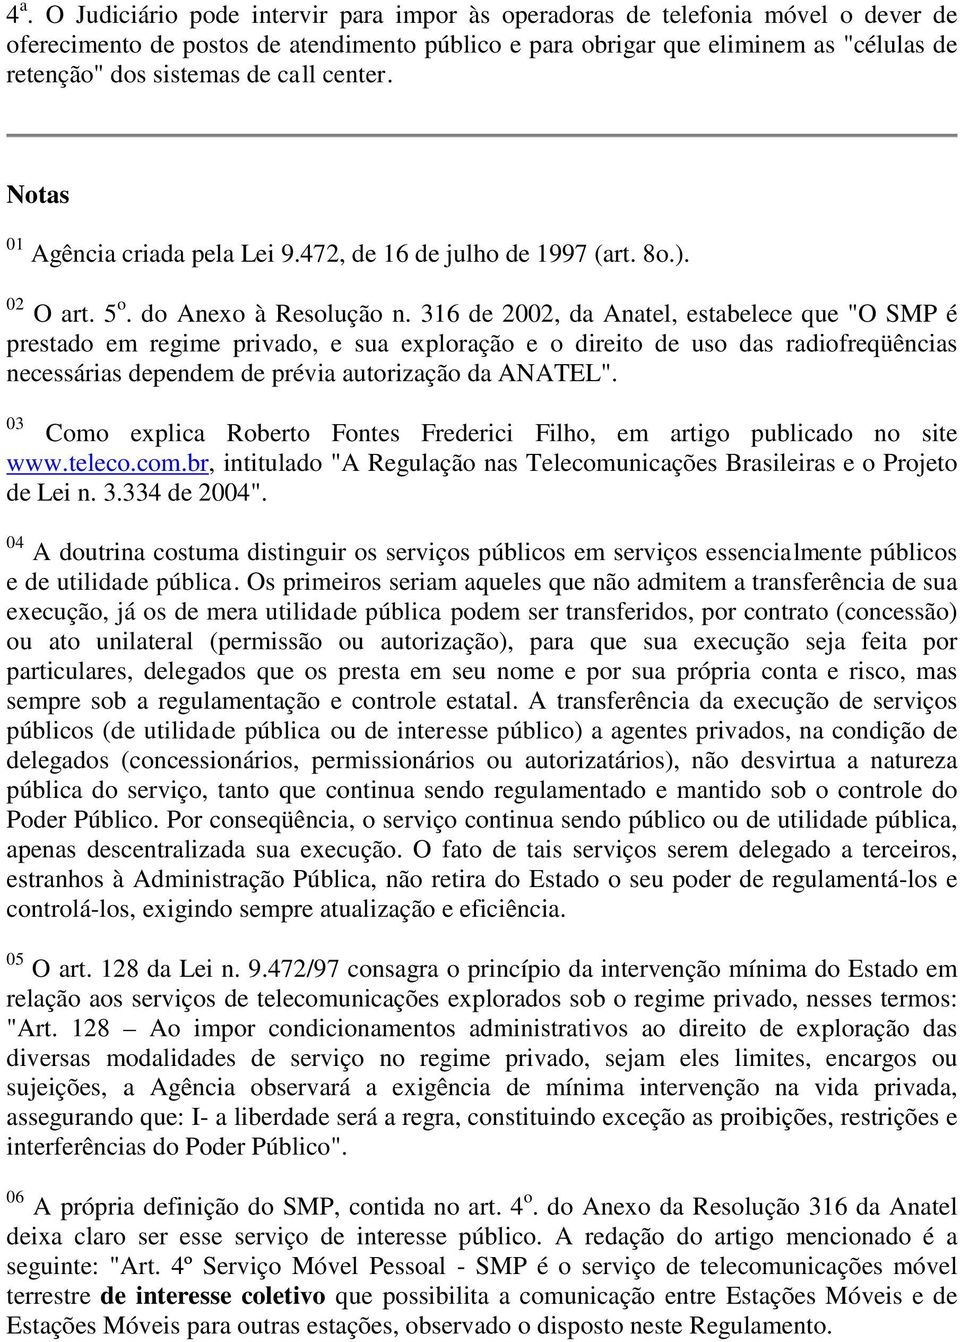 316 de 2002, da Anatel, estabelece que "O SMP é prestado em regime privado, e sua exploração e o direito de uso das radiofreqüências necessárias dependem de prévia autorização da ANATEL".